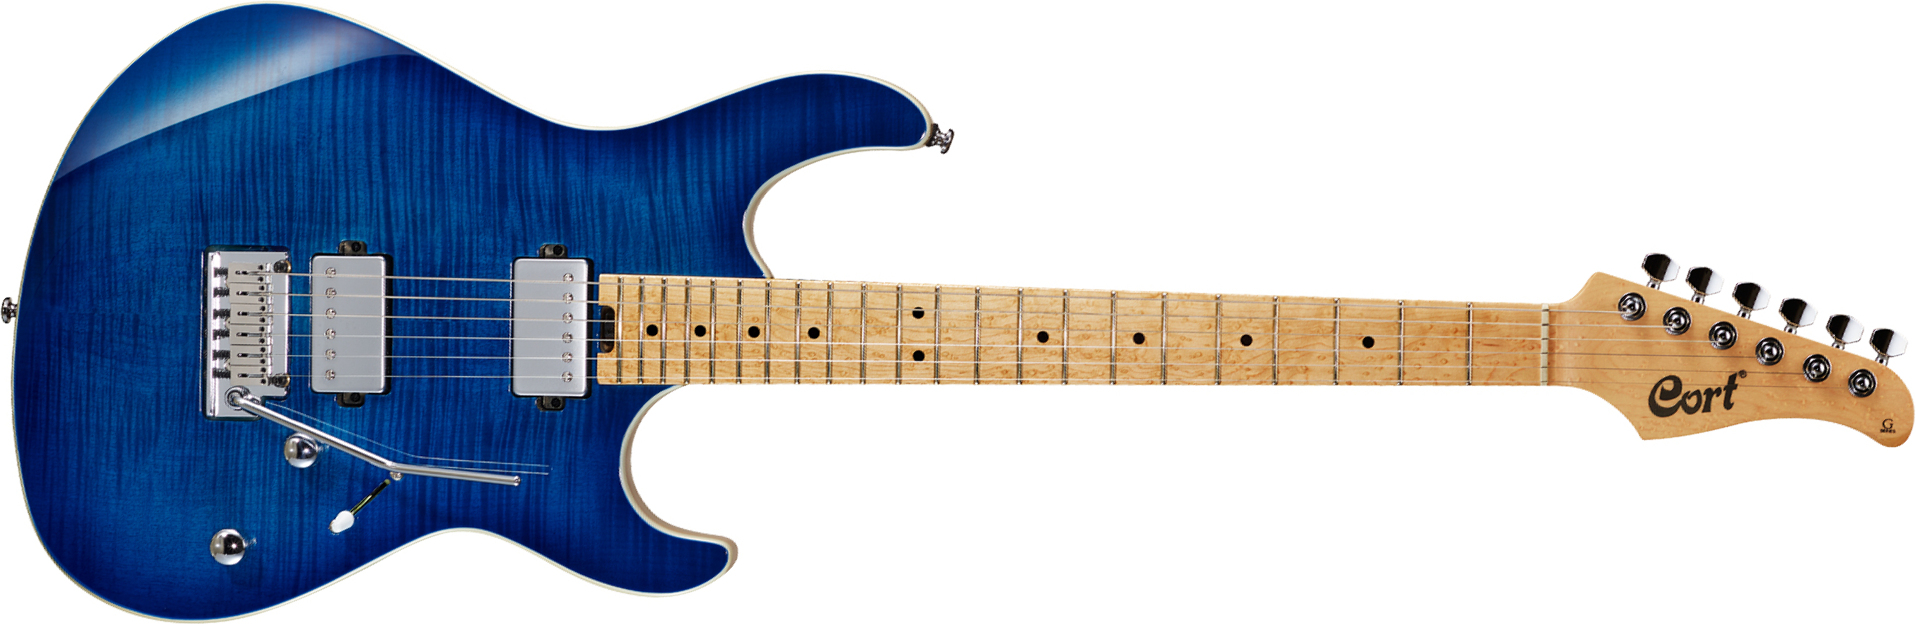 Cort G290 Fat Bbb Hh Trem Mn - Blue Burst - Elektrische gitaar in Str-vorm - Main picture